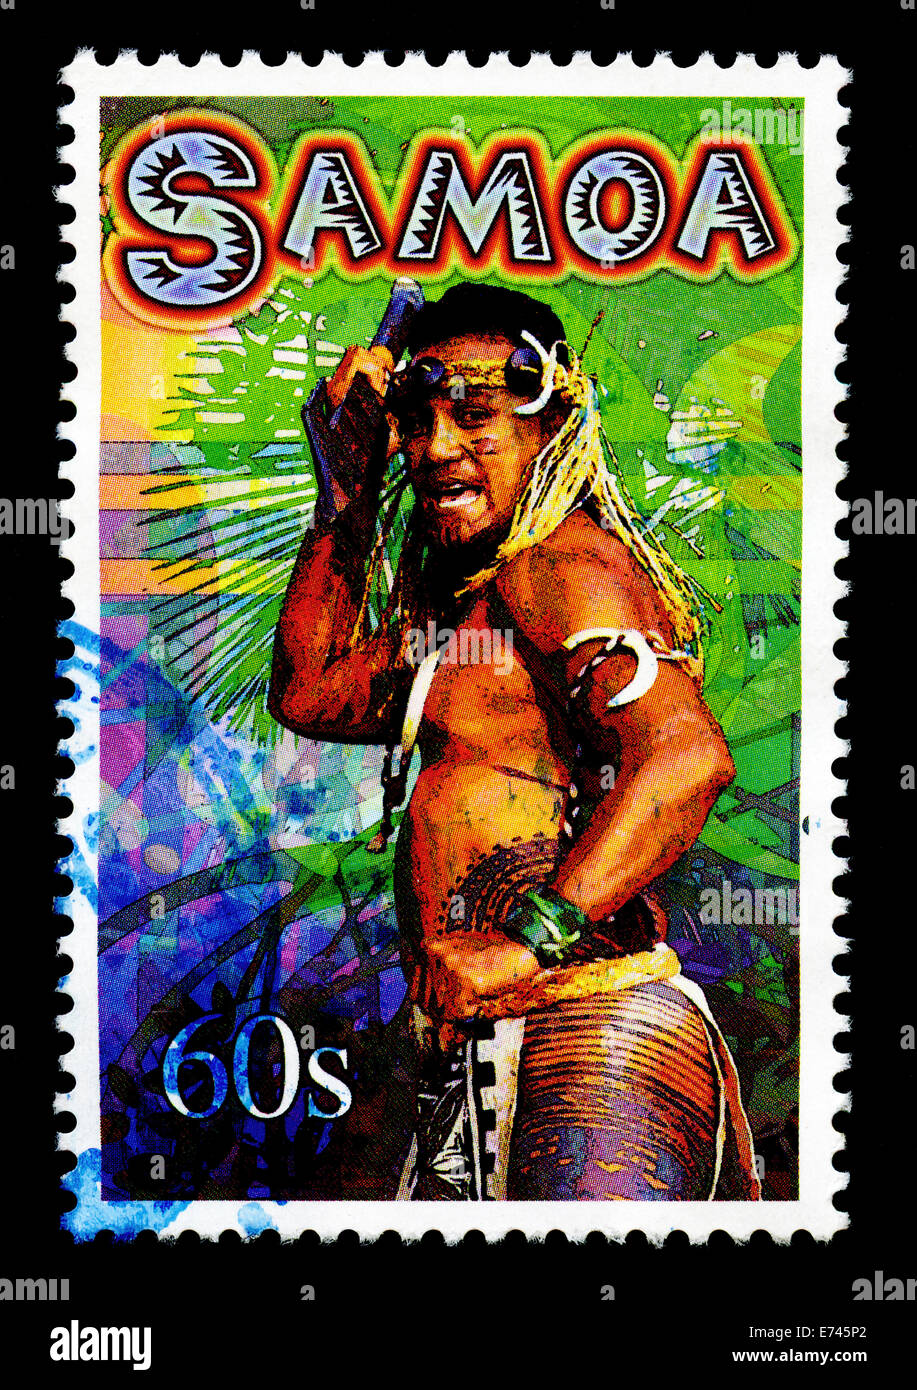 Samoa sello representando a la gente local. Foto de stock